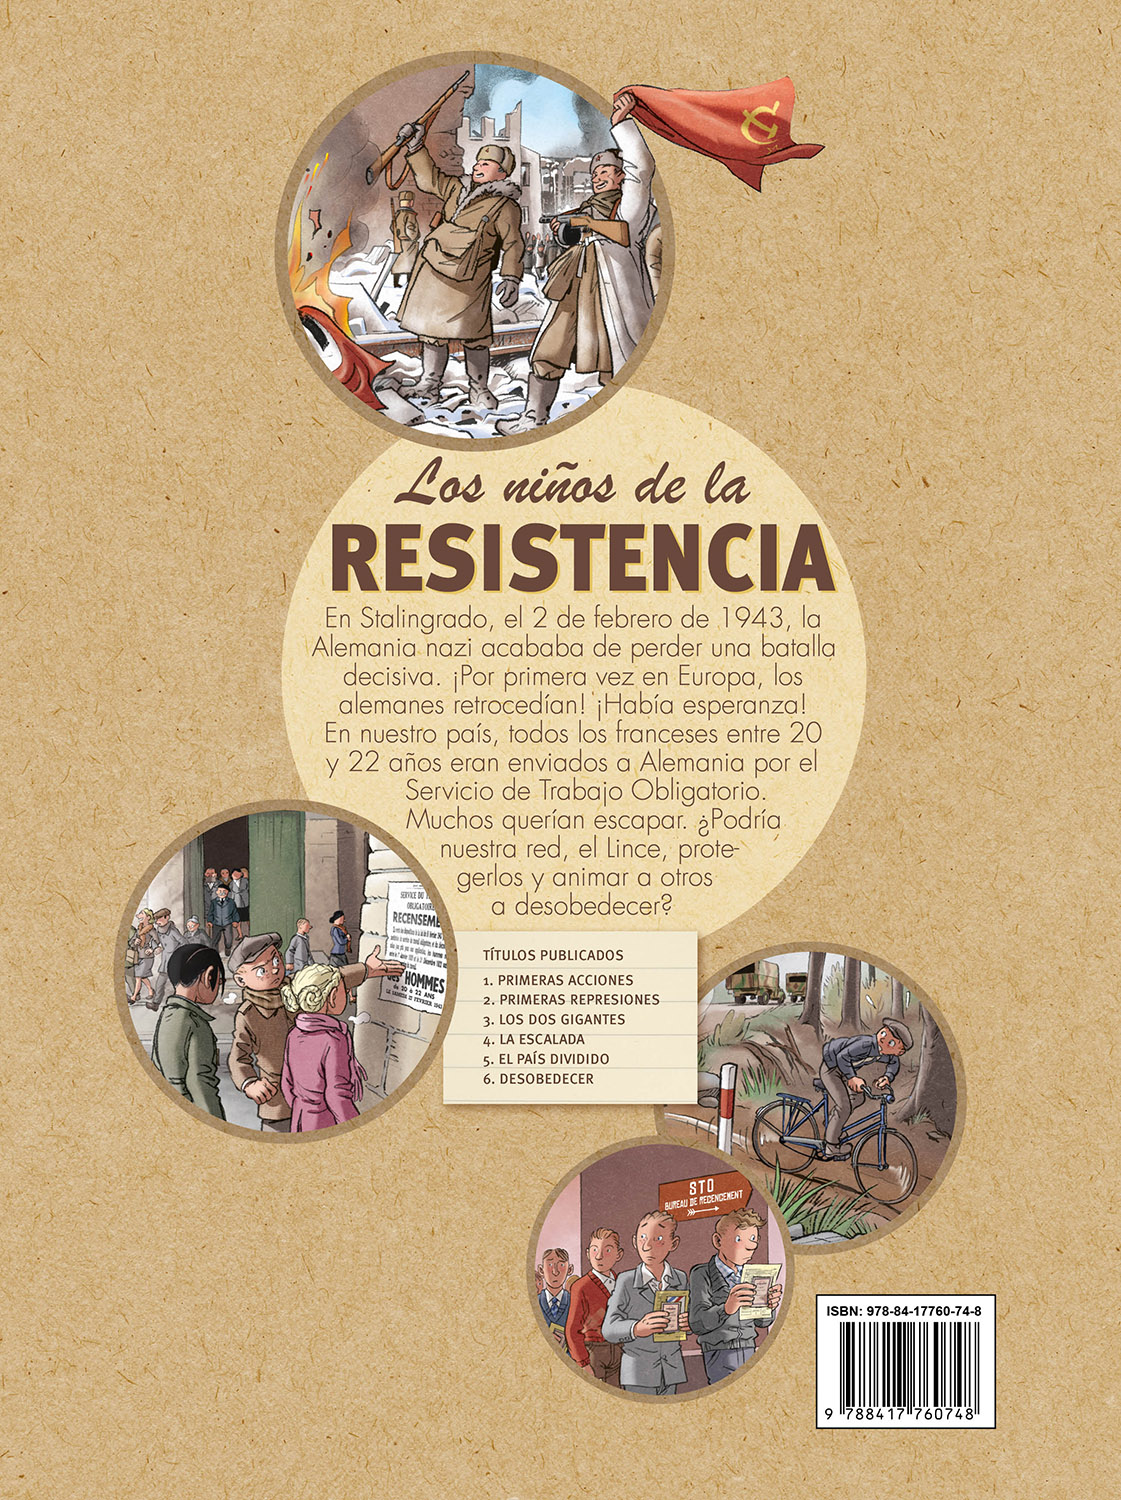 5 Los Niños De La Resistencia El País dividido 